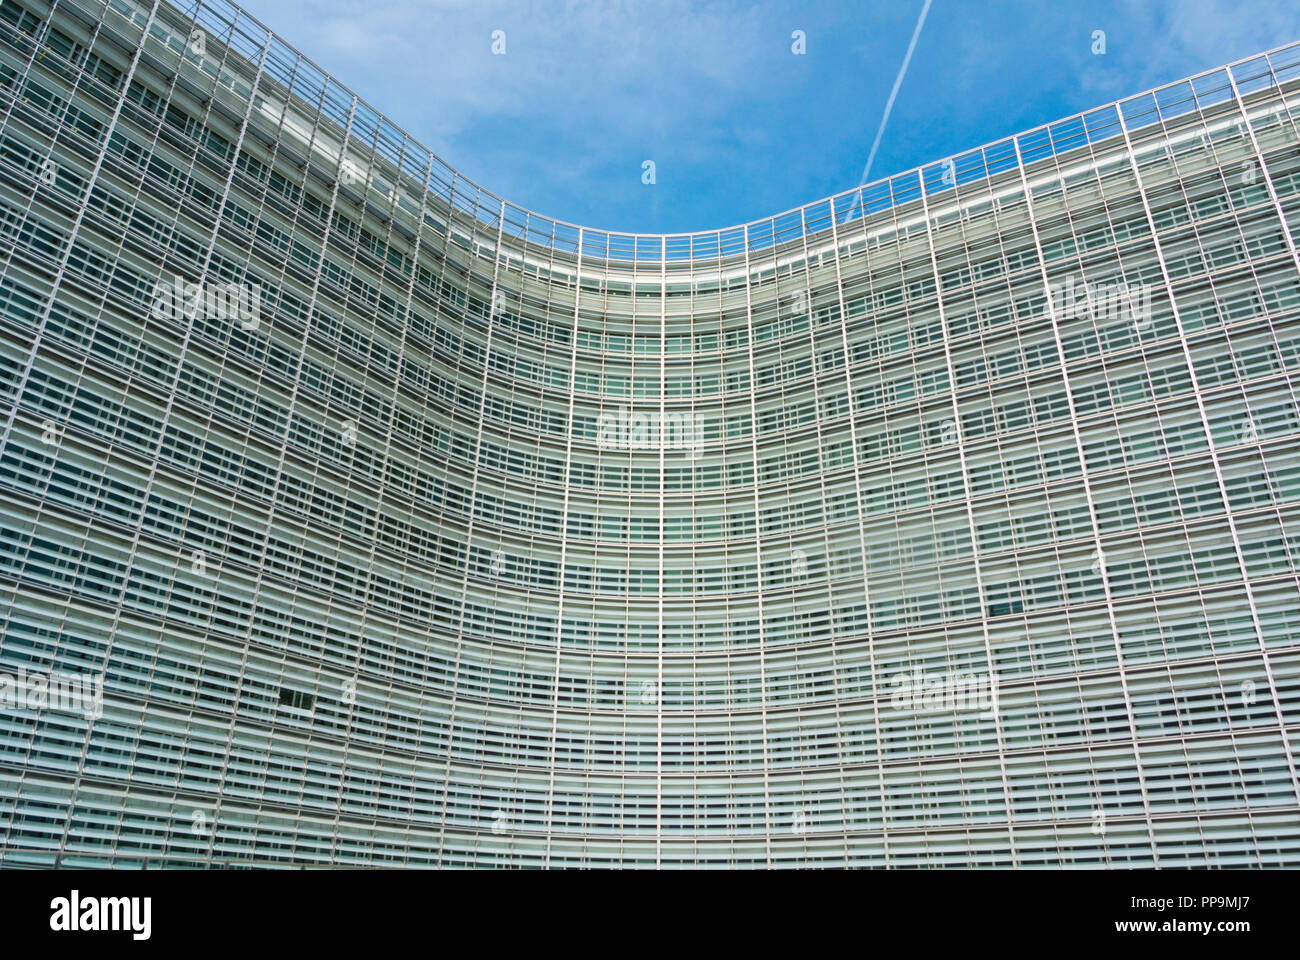 Berlaymont, European Commission headquarters, European Quarter, Brussels, Belgium Stock Photo